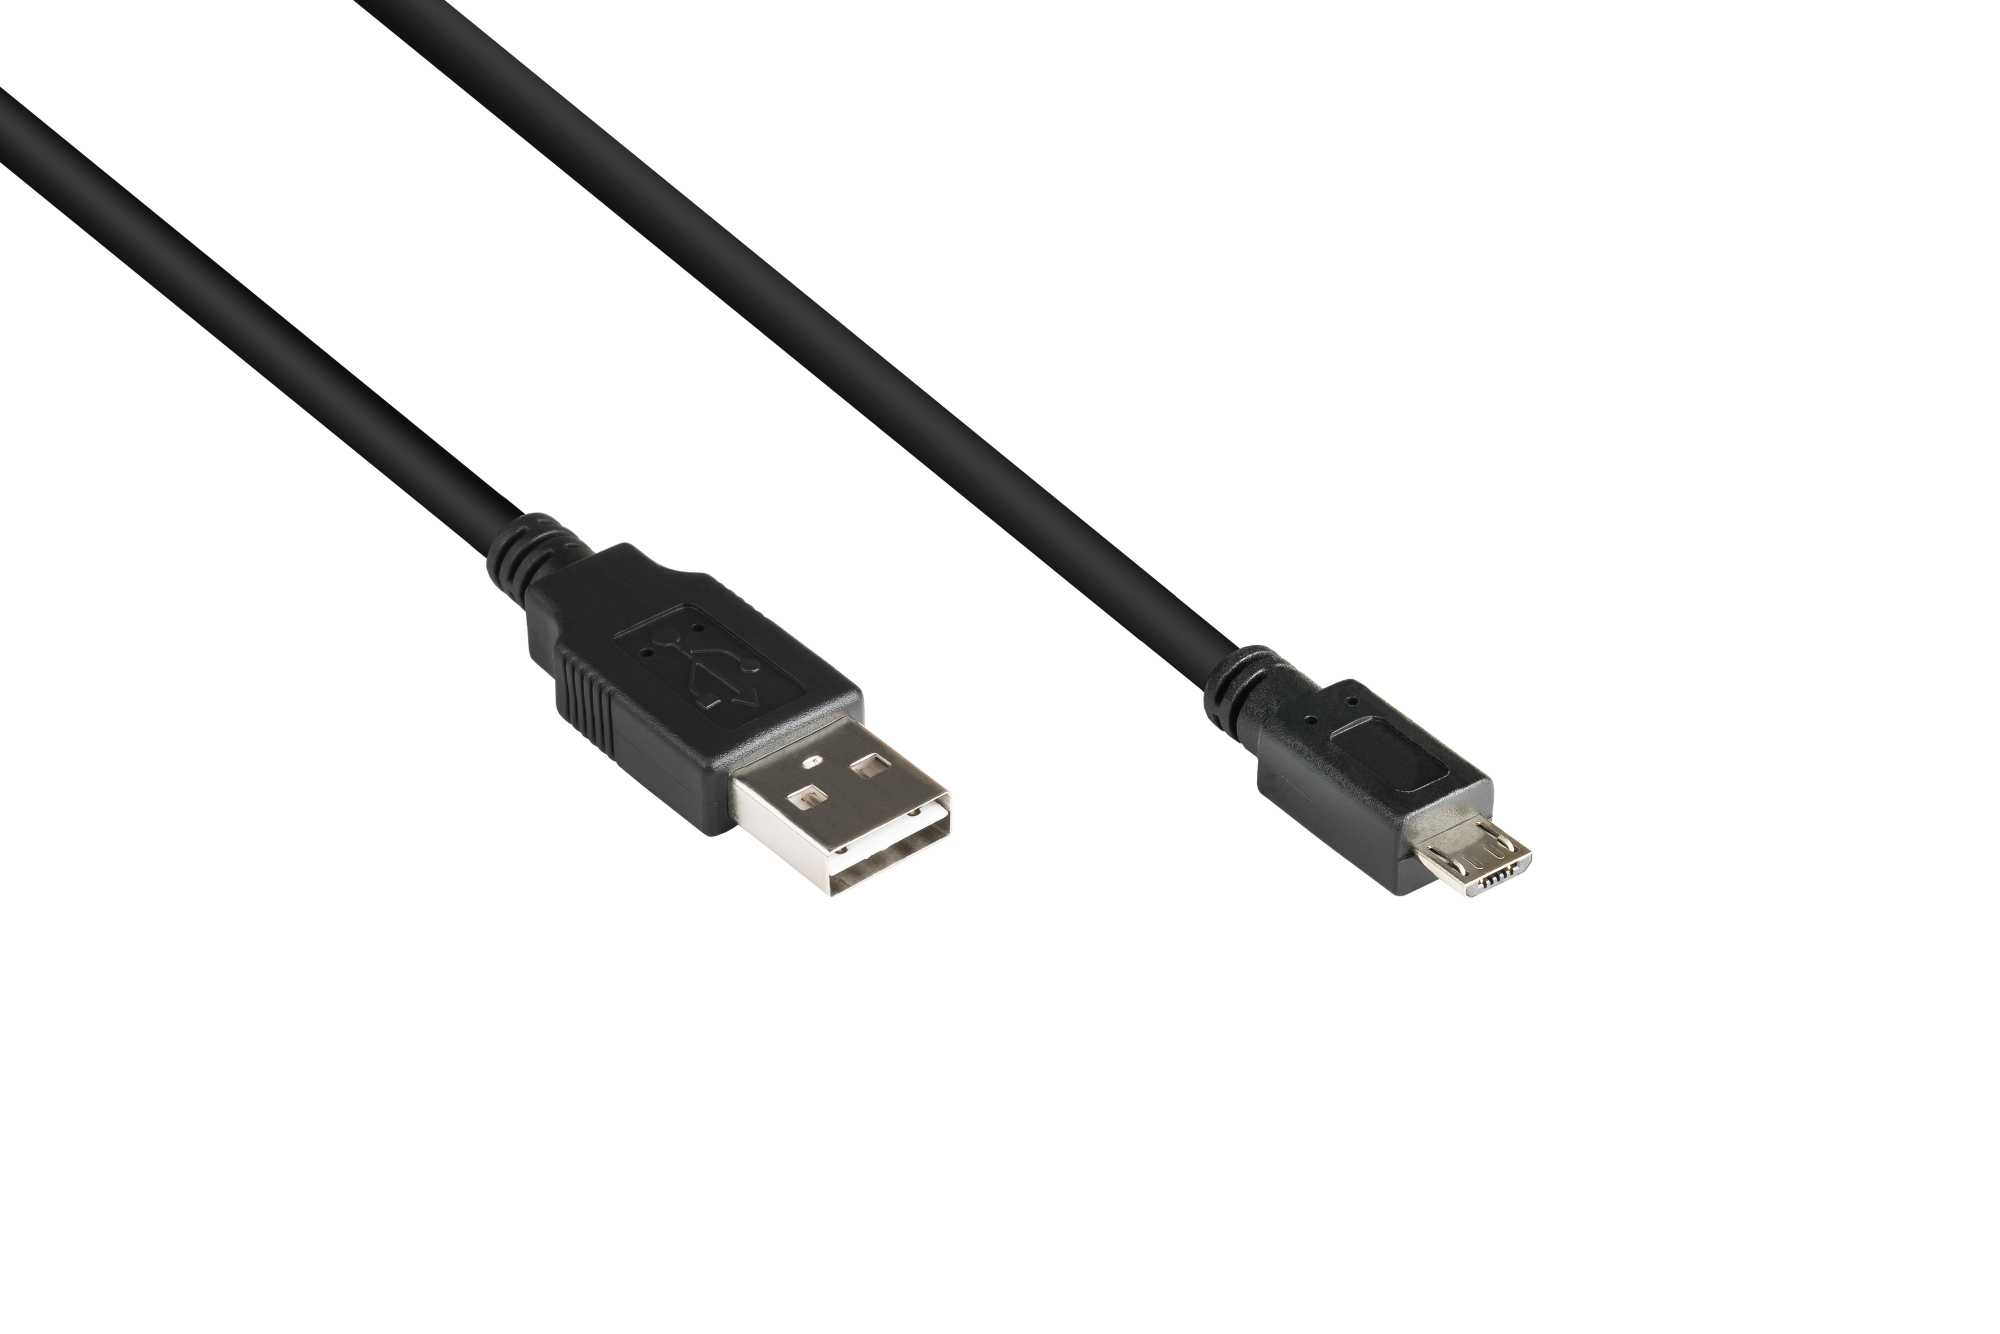 Anschlusskabel USB 2.0 EASY Stecker A an Stecker Micro B, schwarz, 3m